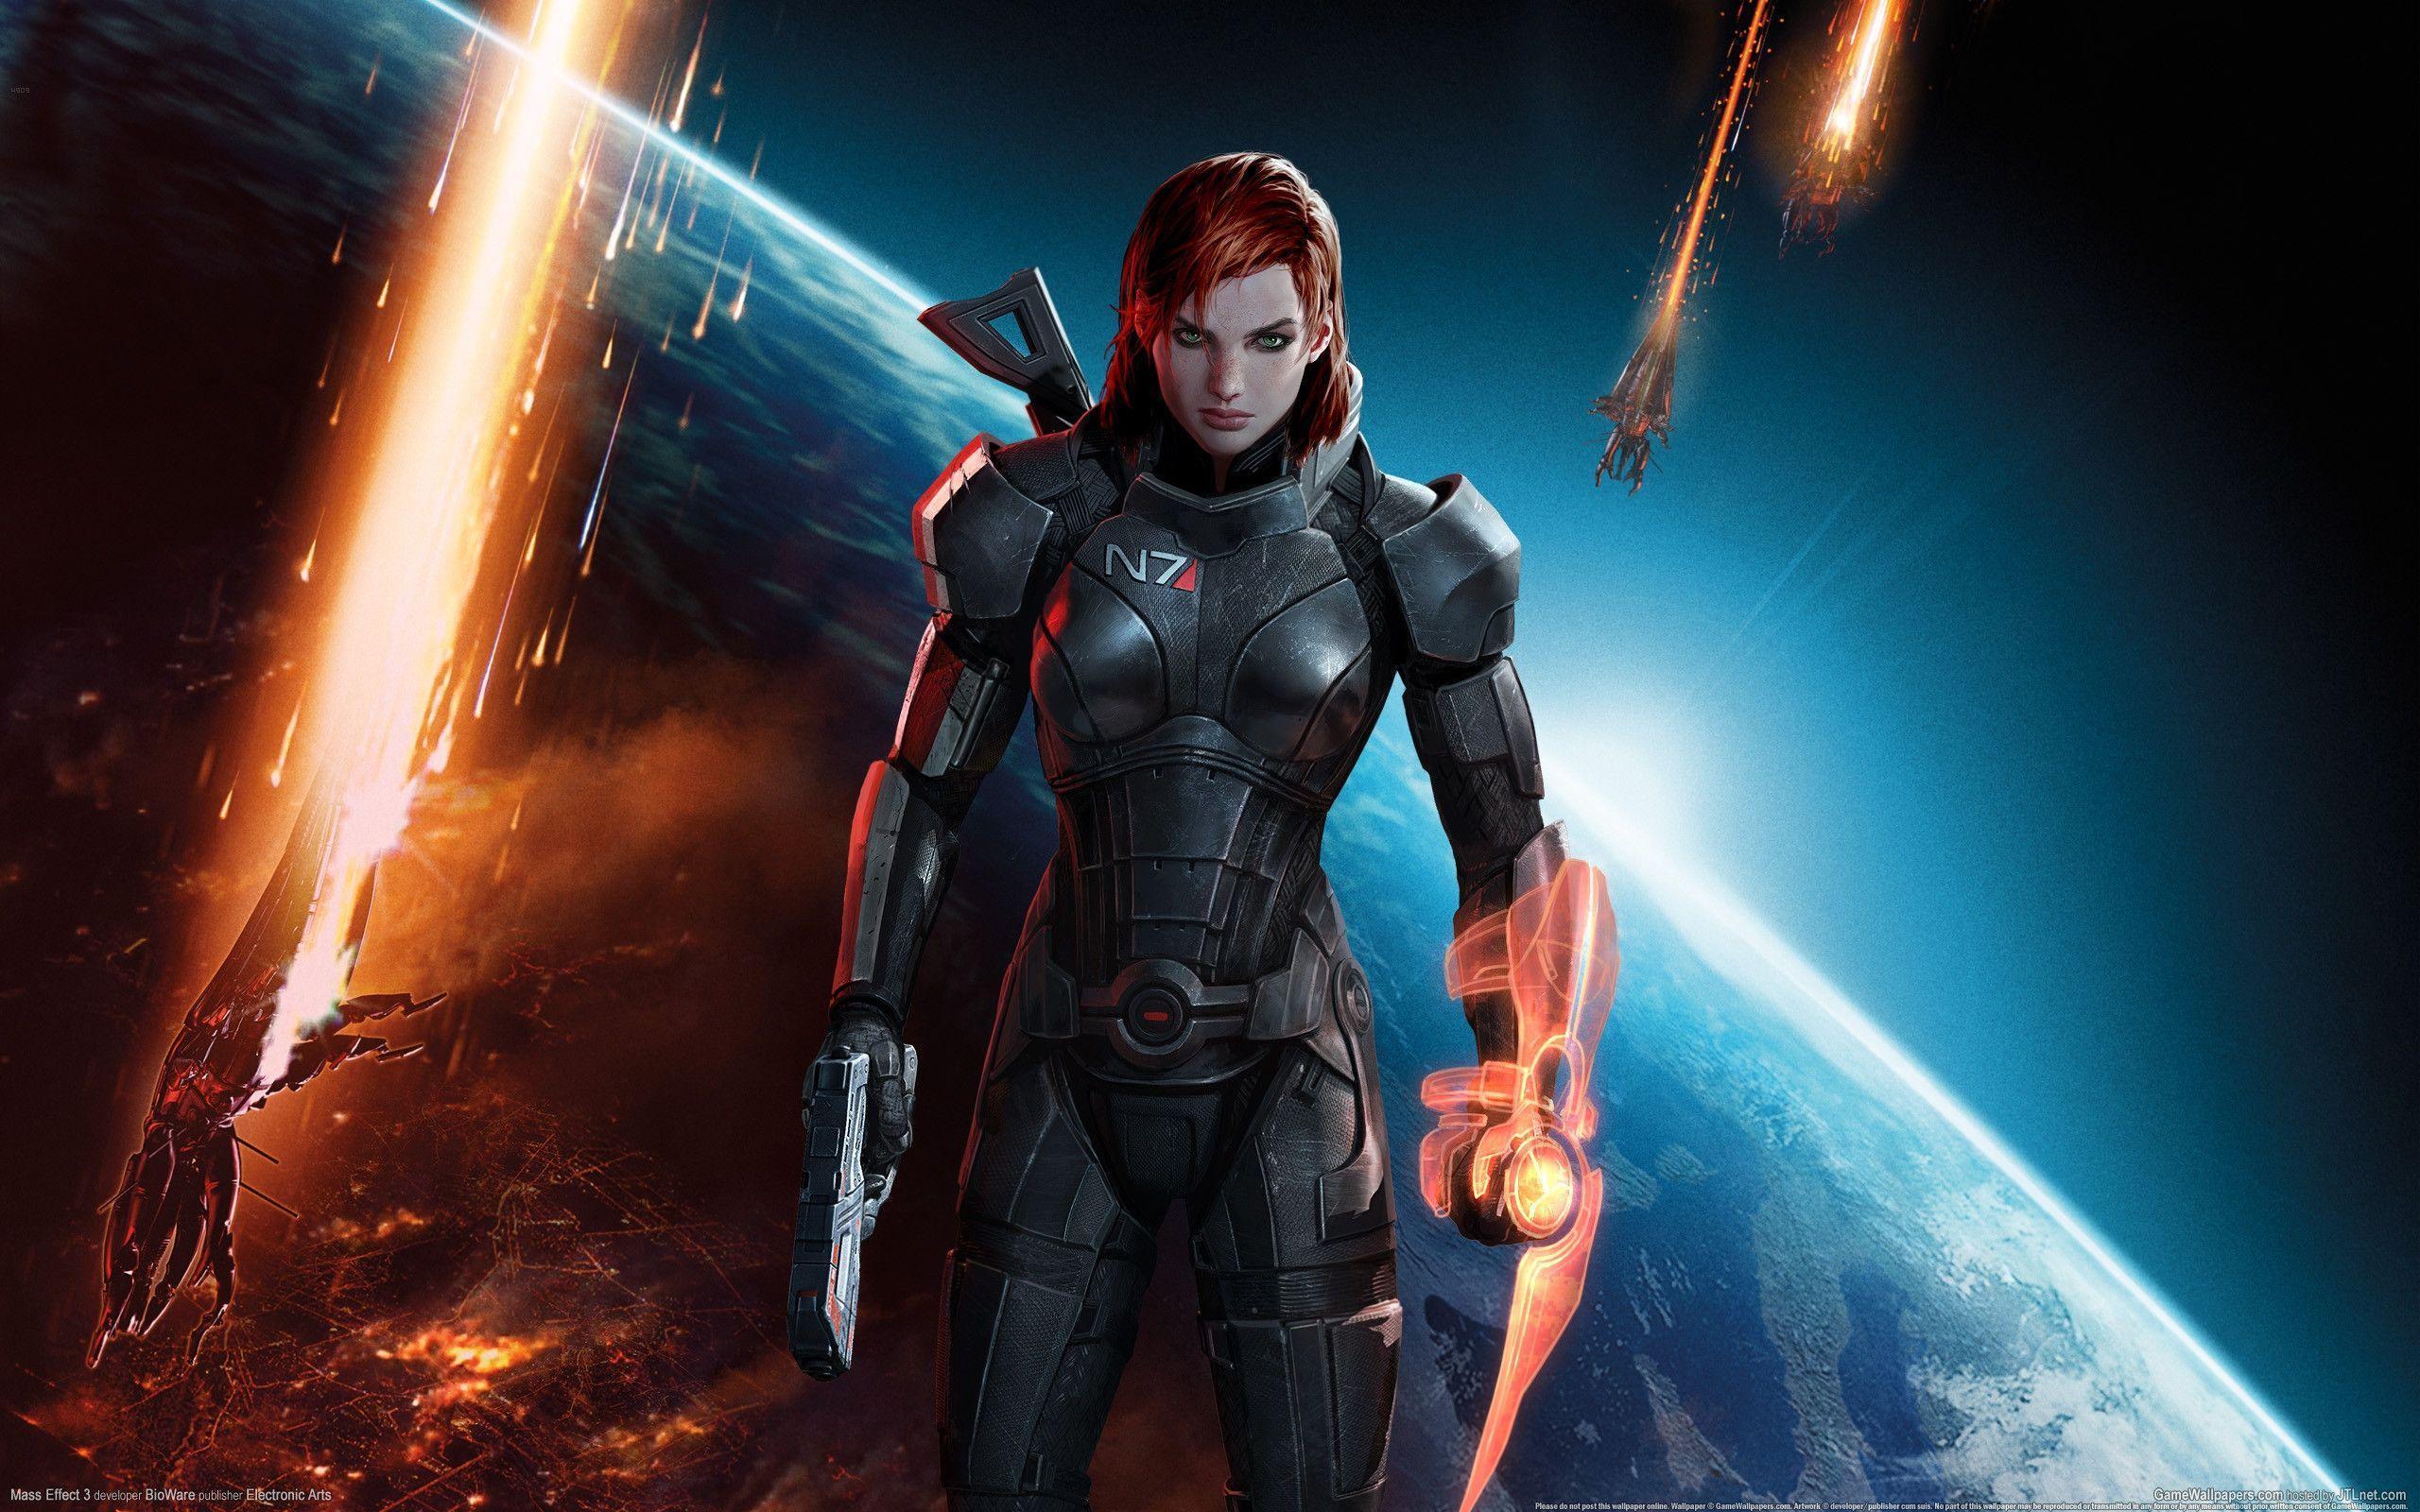 2560 x 1600 · jpeg - Mass Effect 3 Wallpapers - Wallpaper Cave